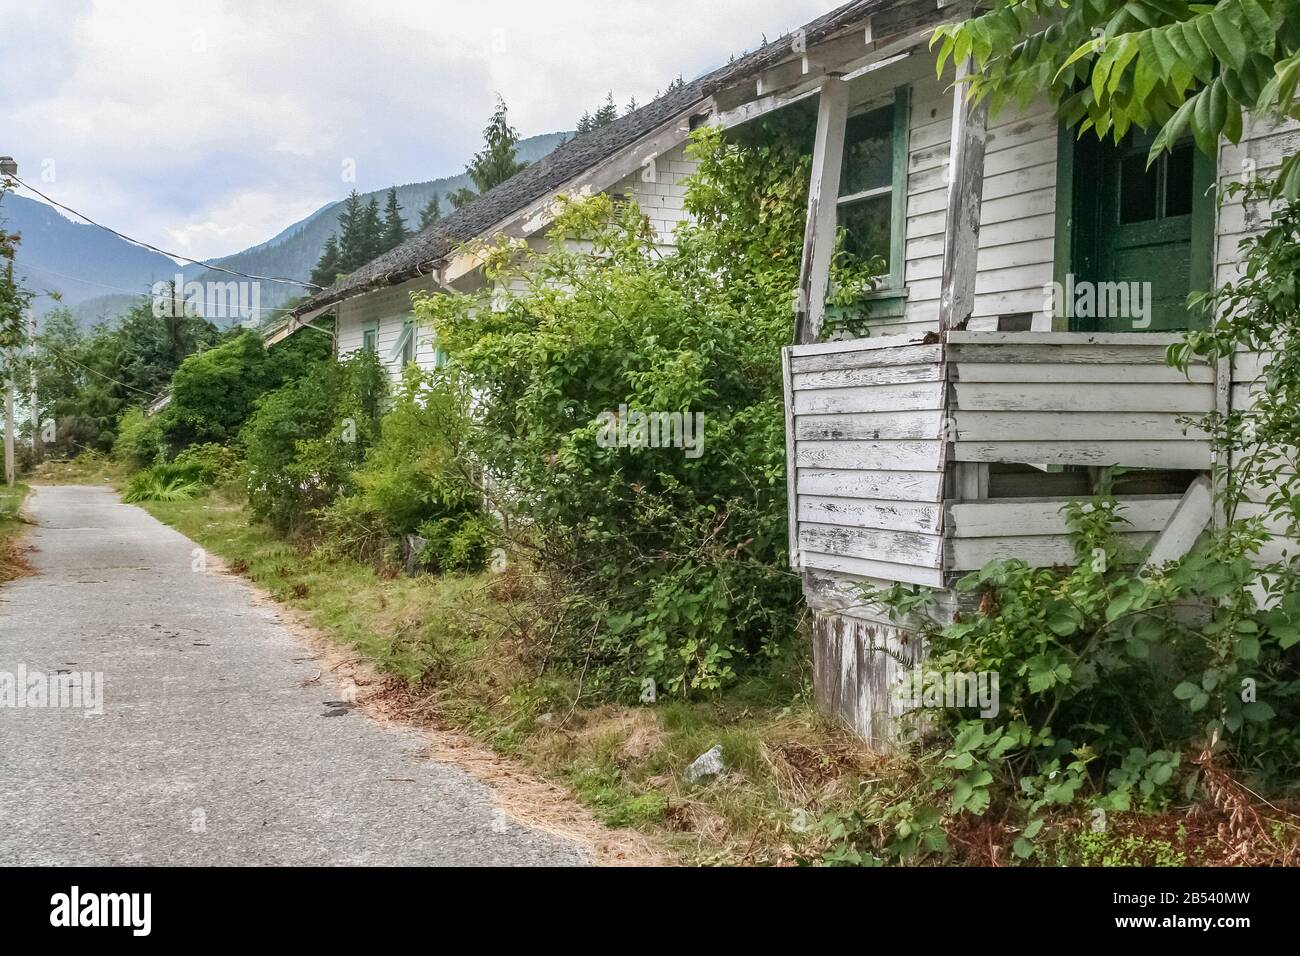 Verlassene, verfallende Klapperhäuser und ungepflegt Rasenflächen und Sträucher neben einem Gehweg in der einst geschäftigen Geisterstadt Ocean Falls, British Columbia. Stockfoto